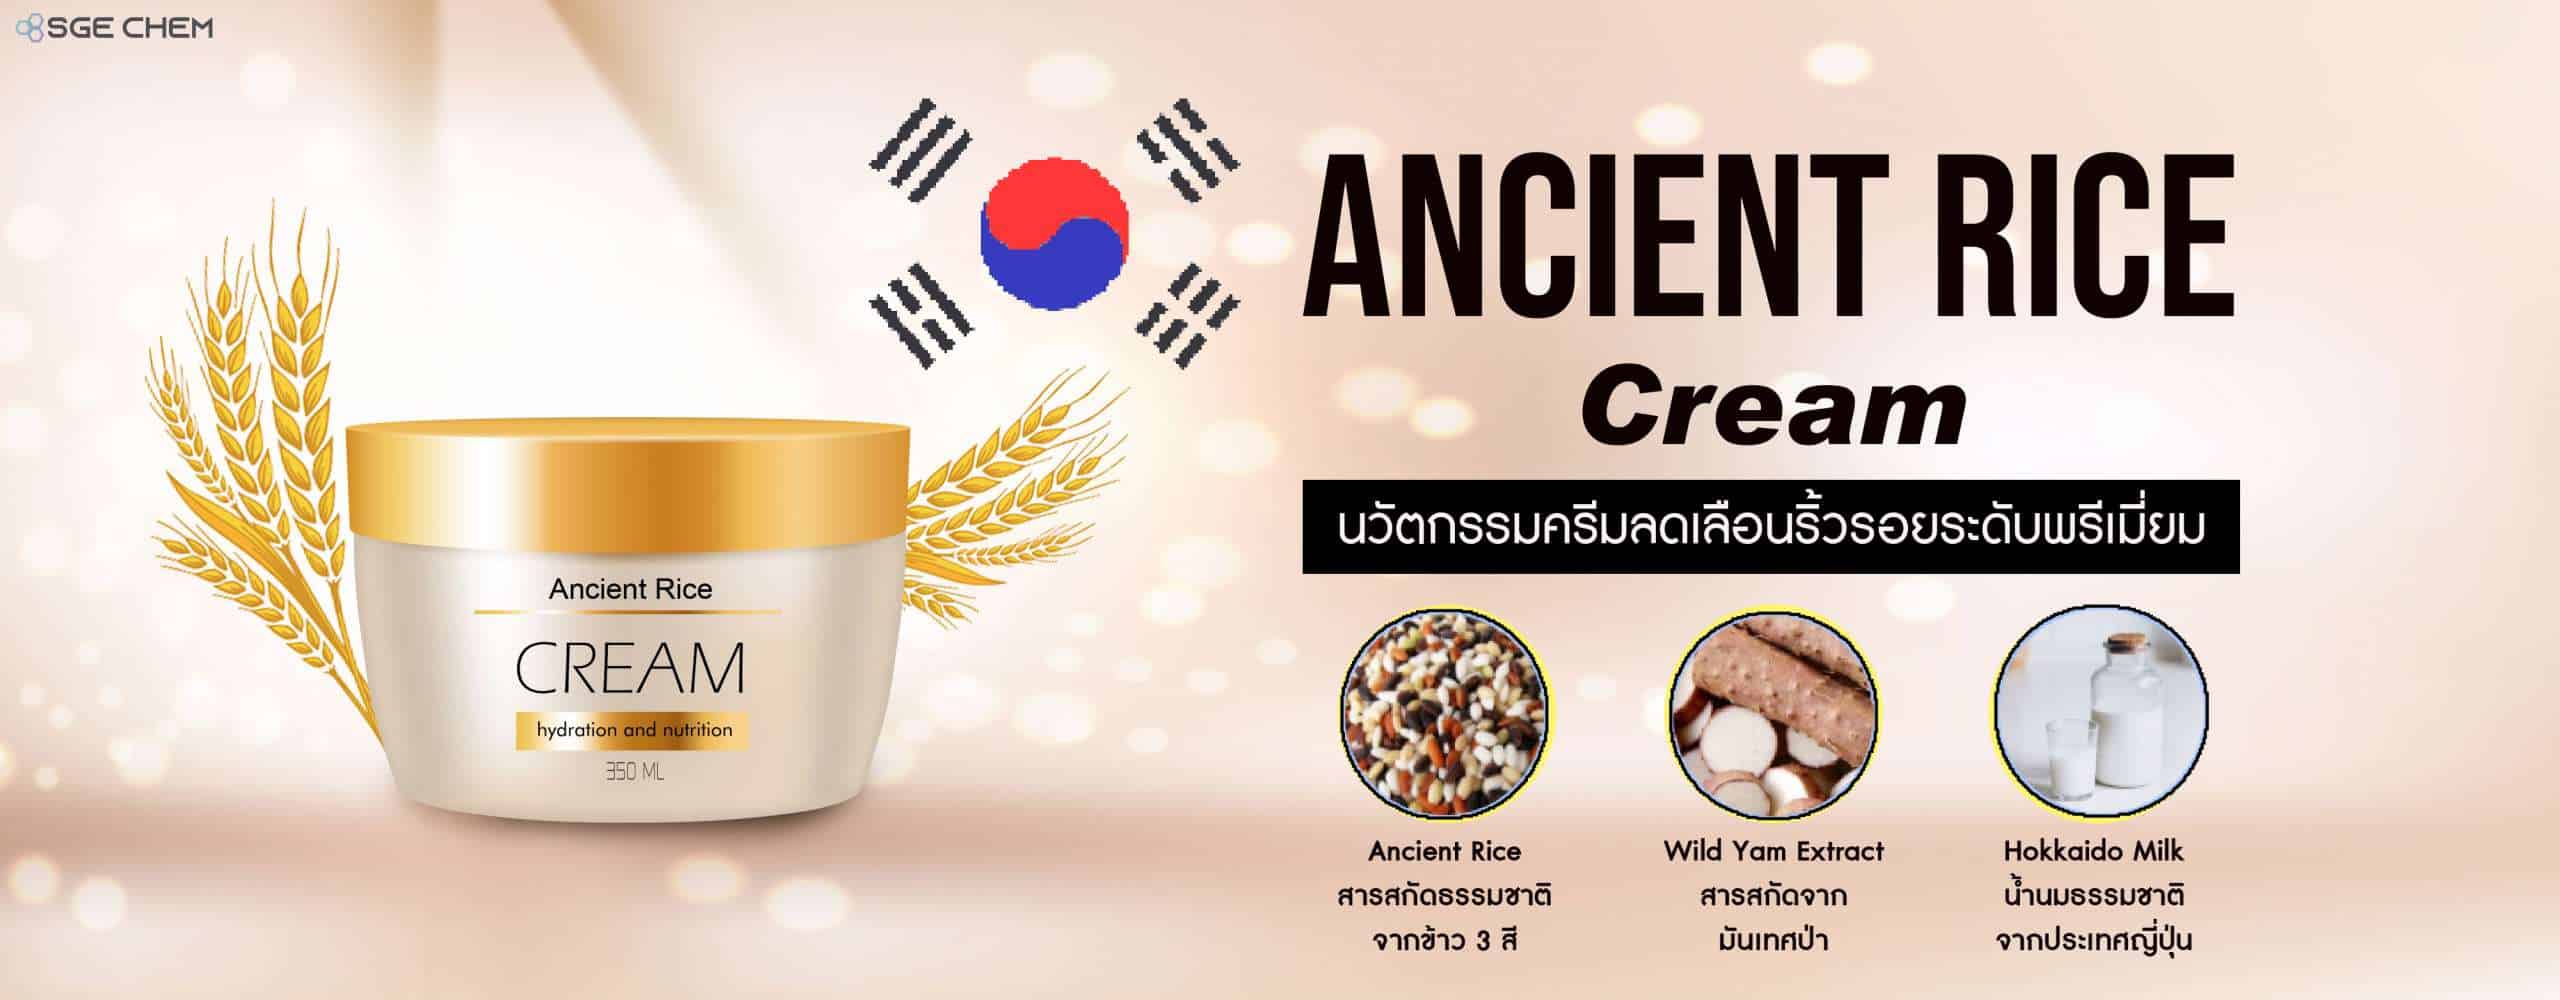 Ancient Rice Cream